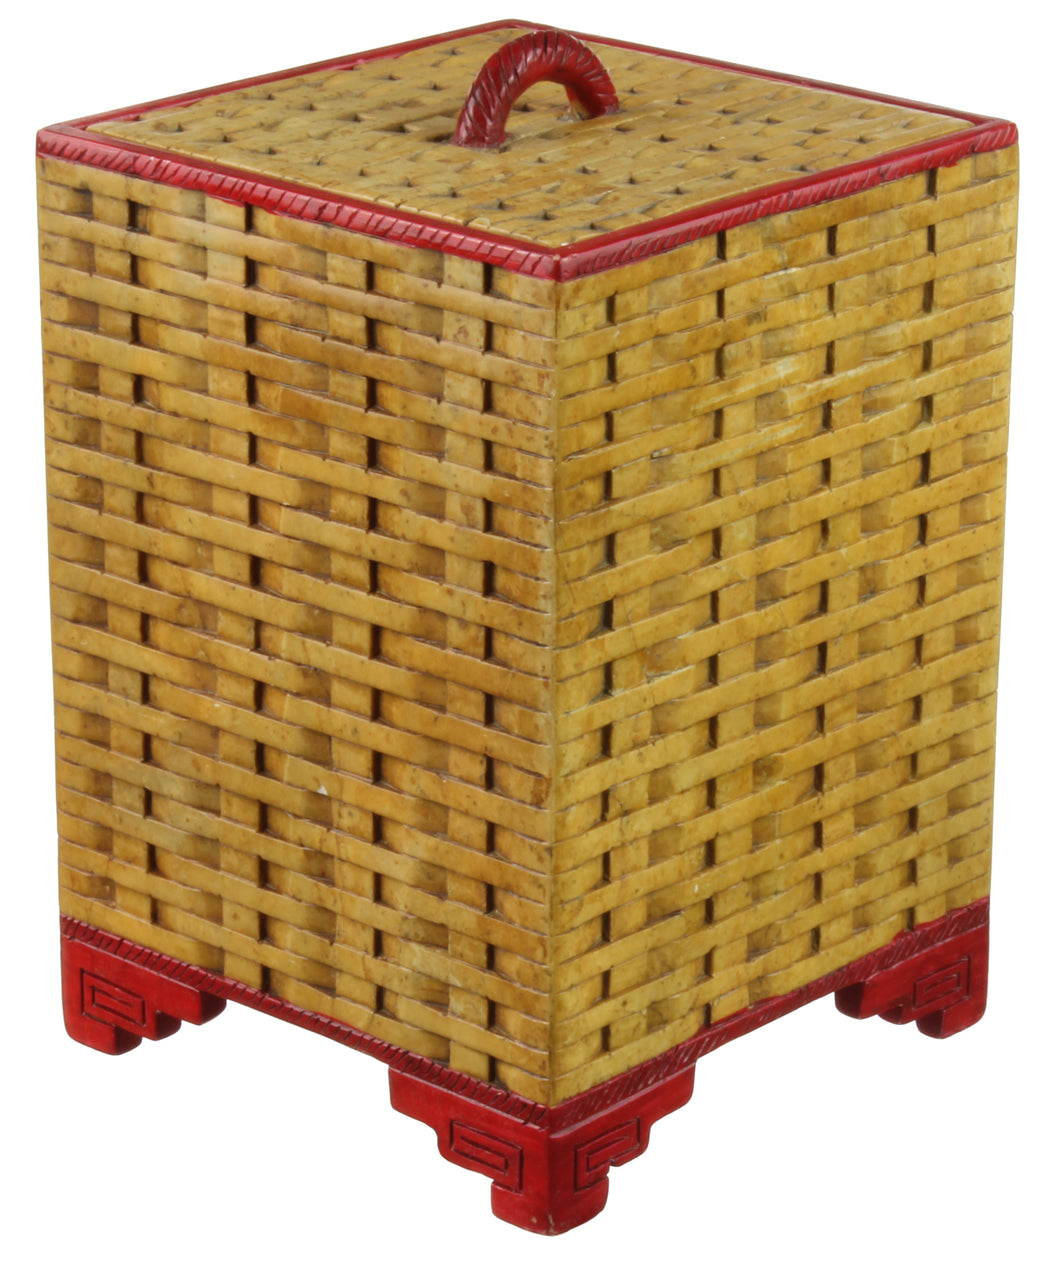 Wicker Weave - Soapstone Trinket Decor Lidded Box - Niger Bend